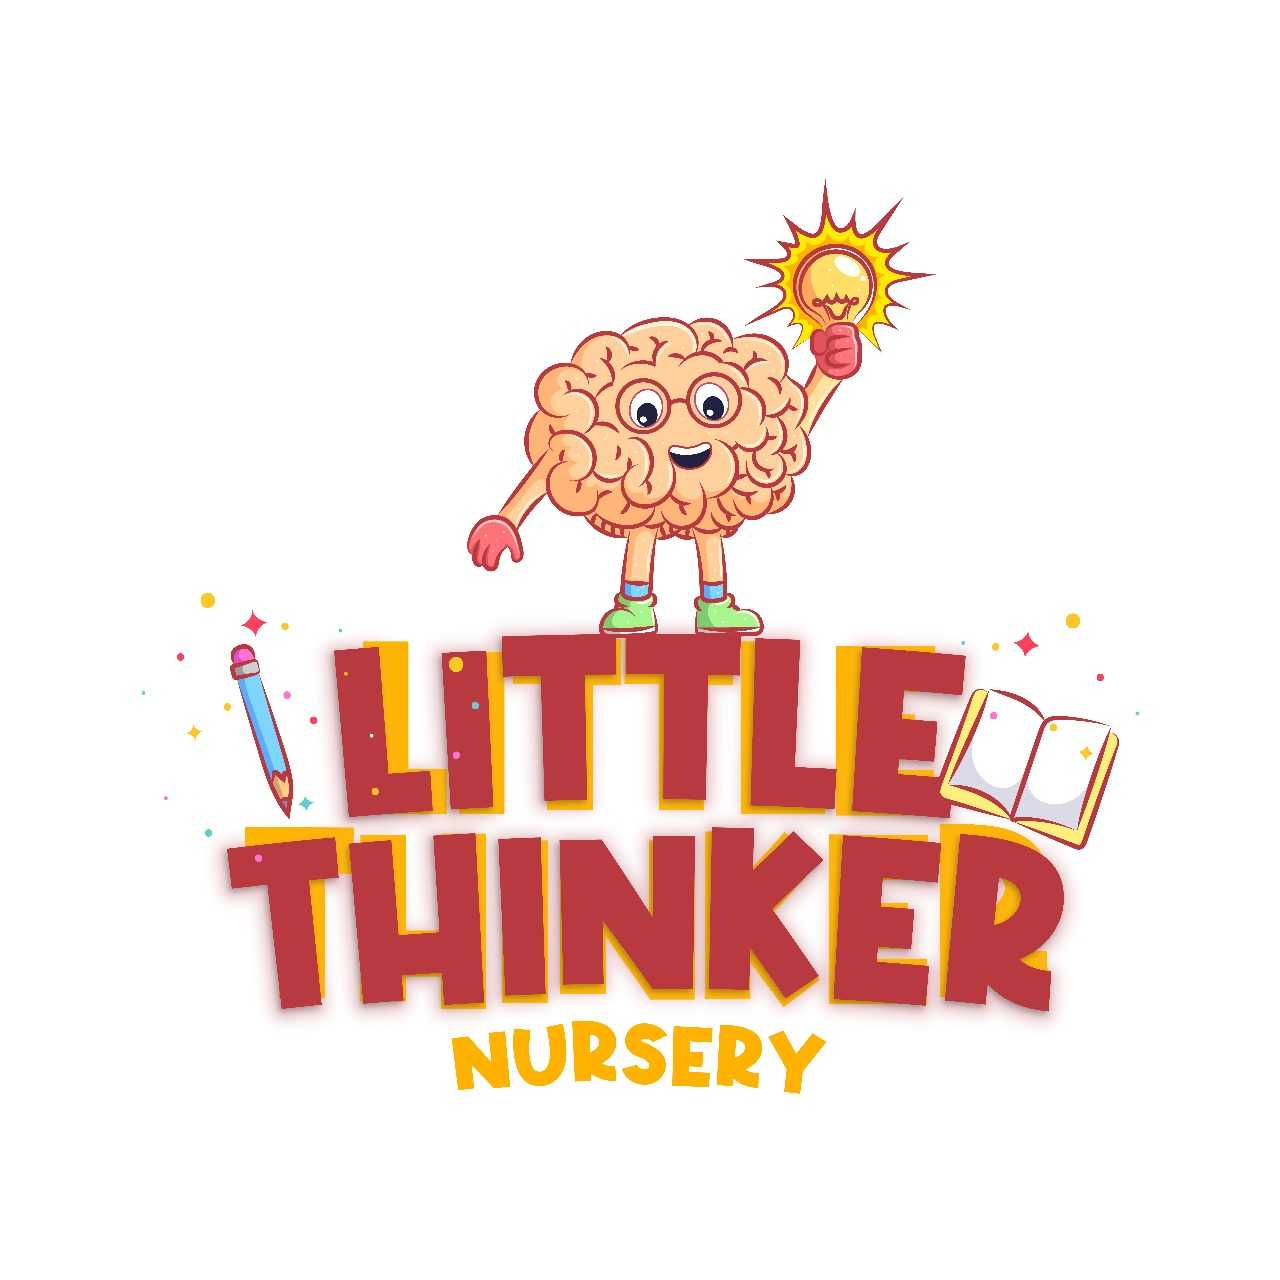 Little Thinker Nursery